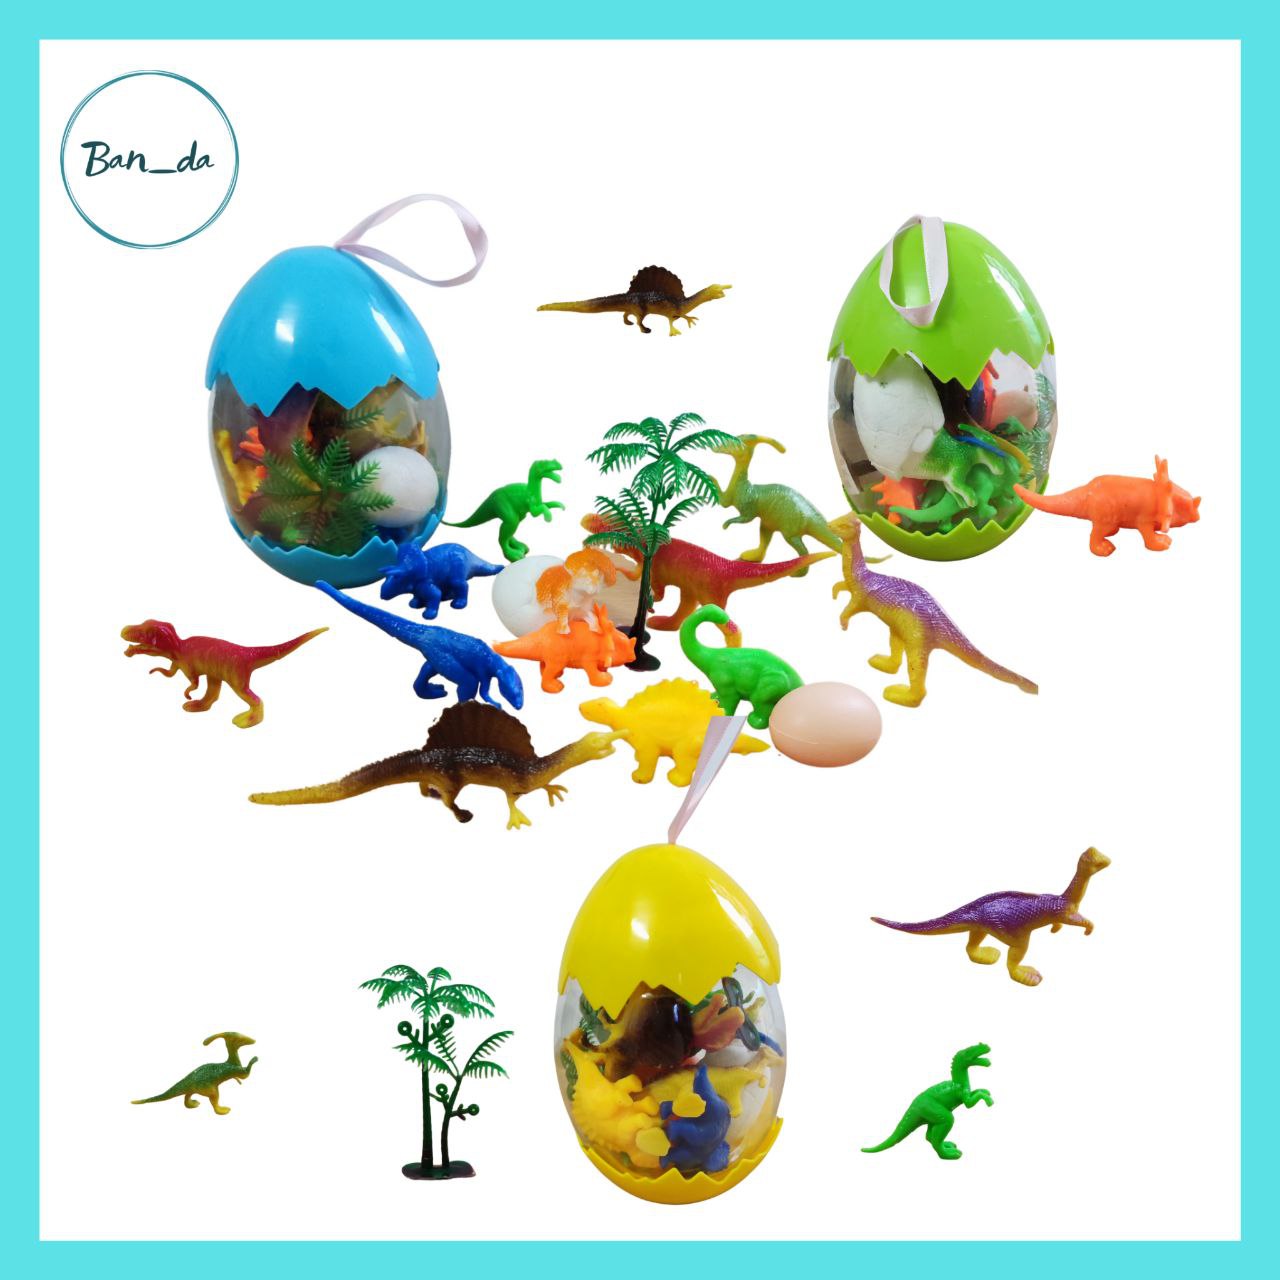 Đồ chơi trứng khủng long nhiều màu sắc, trứng khủng long khổng lồ